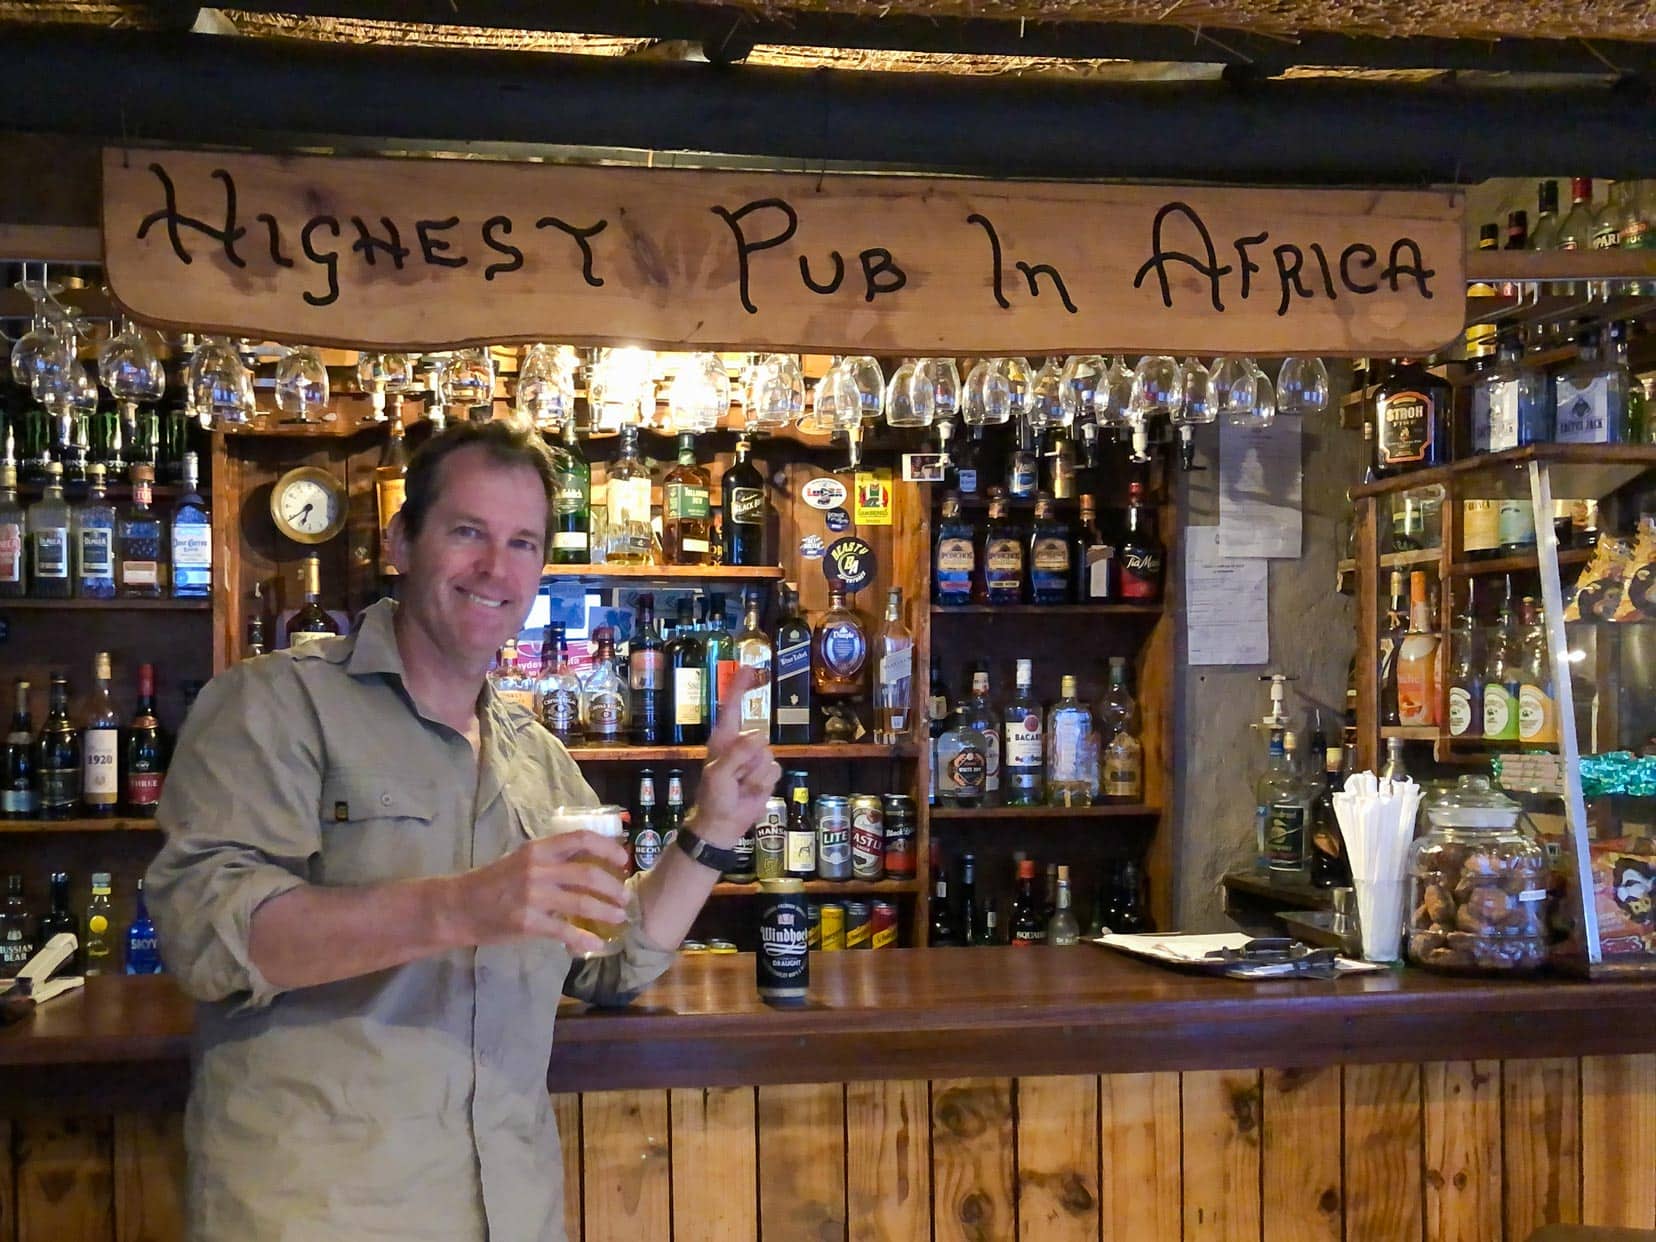 highest-pub-in-africa